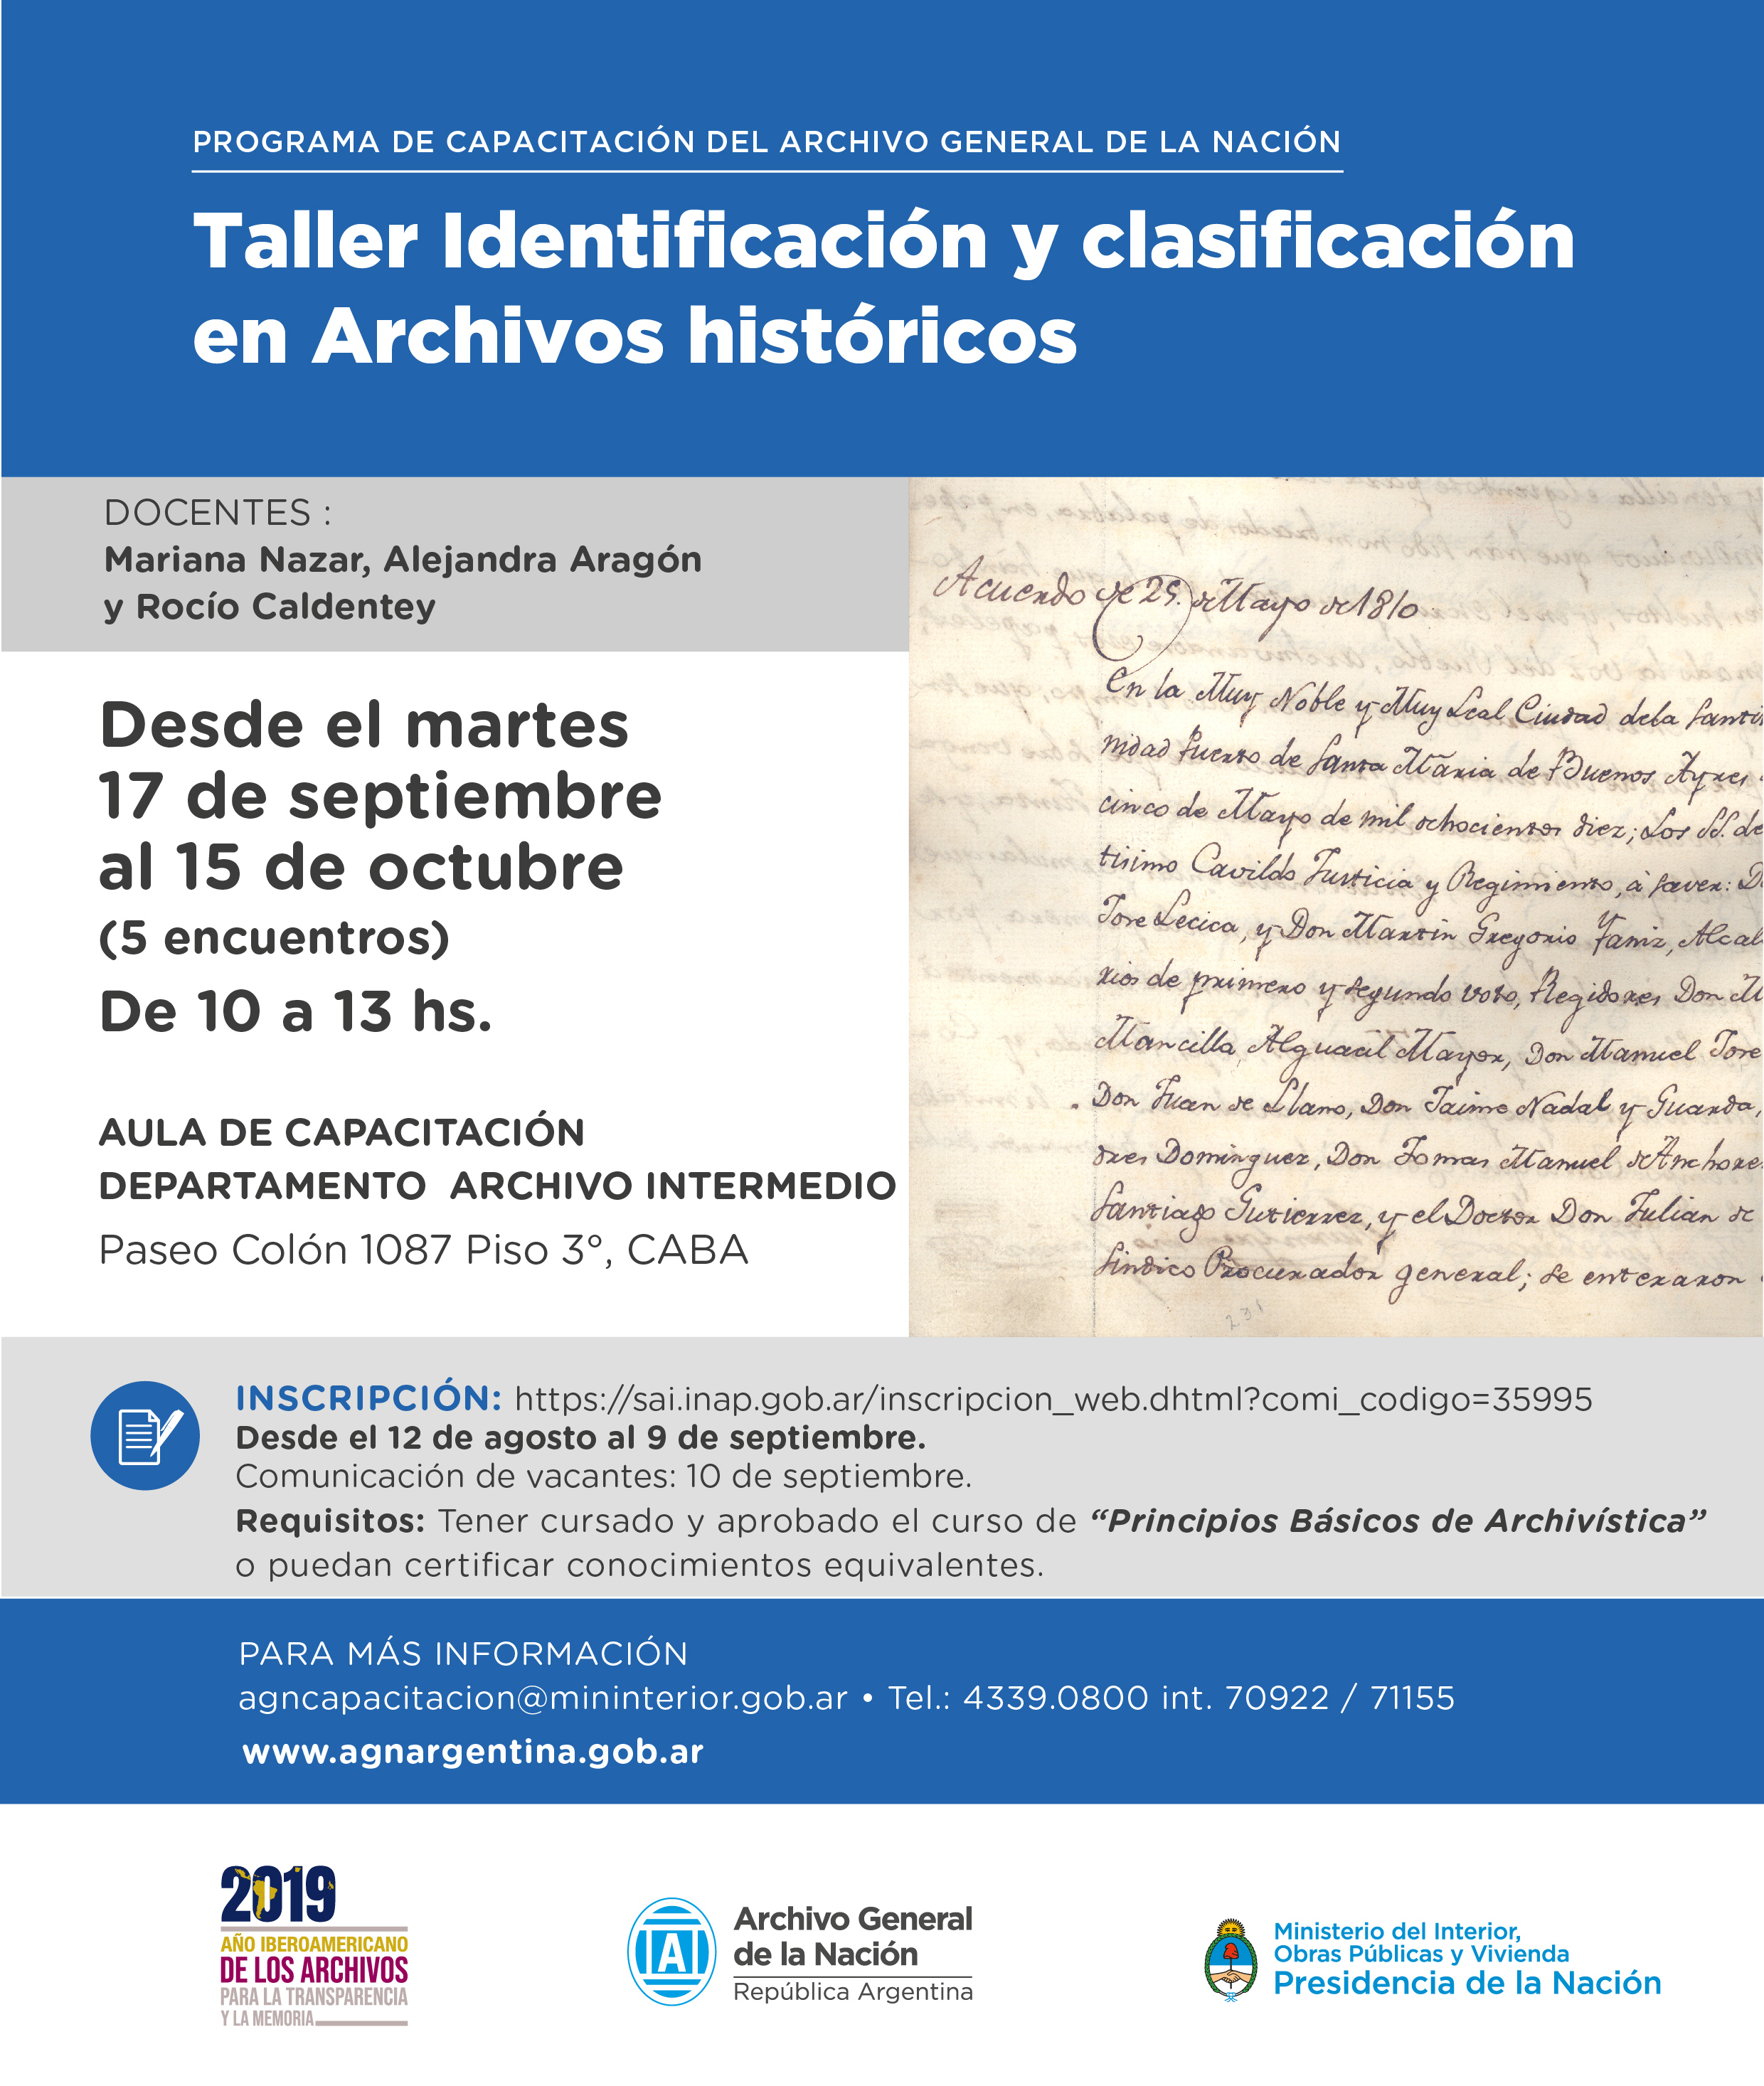 Taller - Identificación y clasificación en archivos históricos